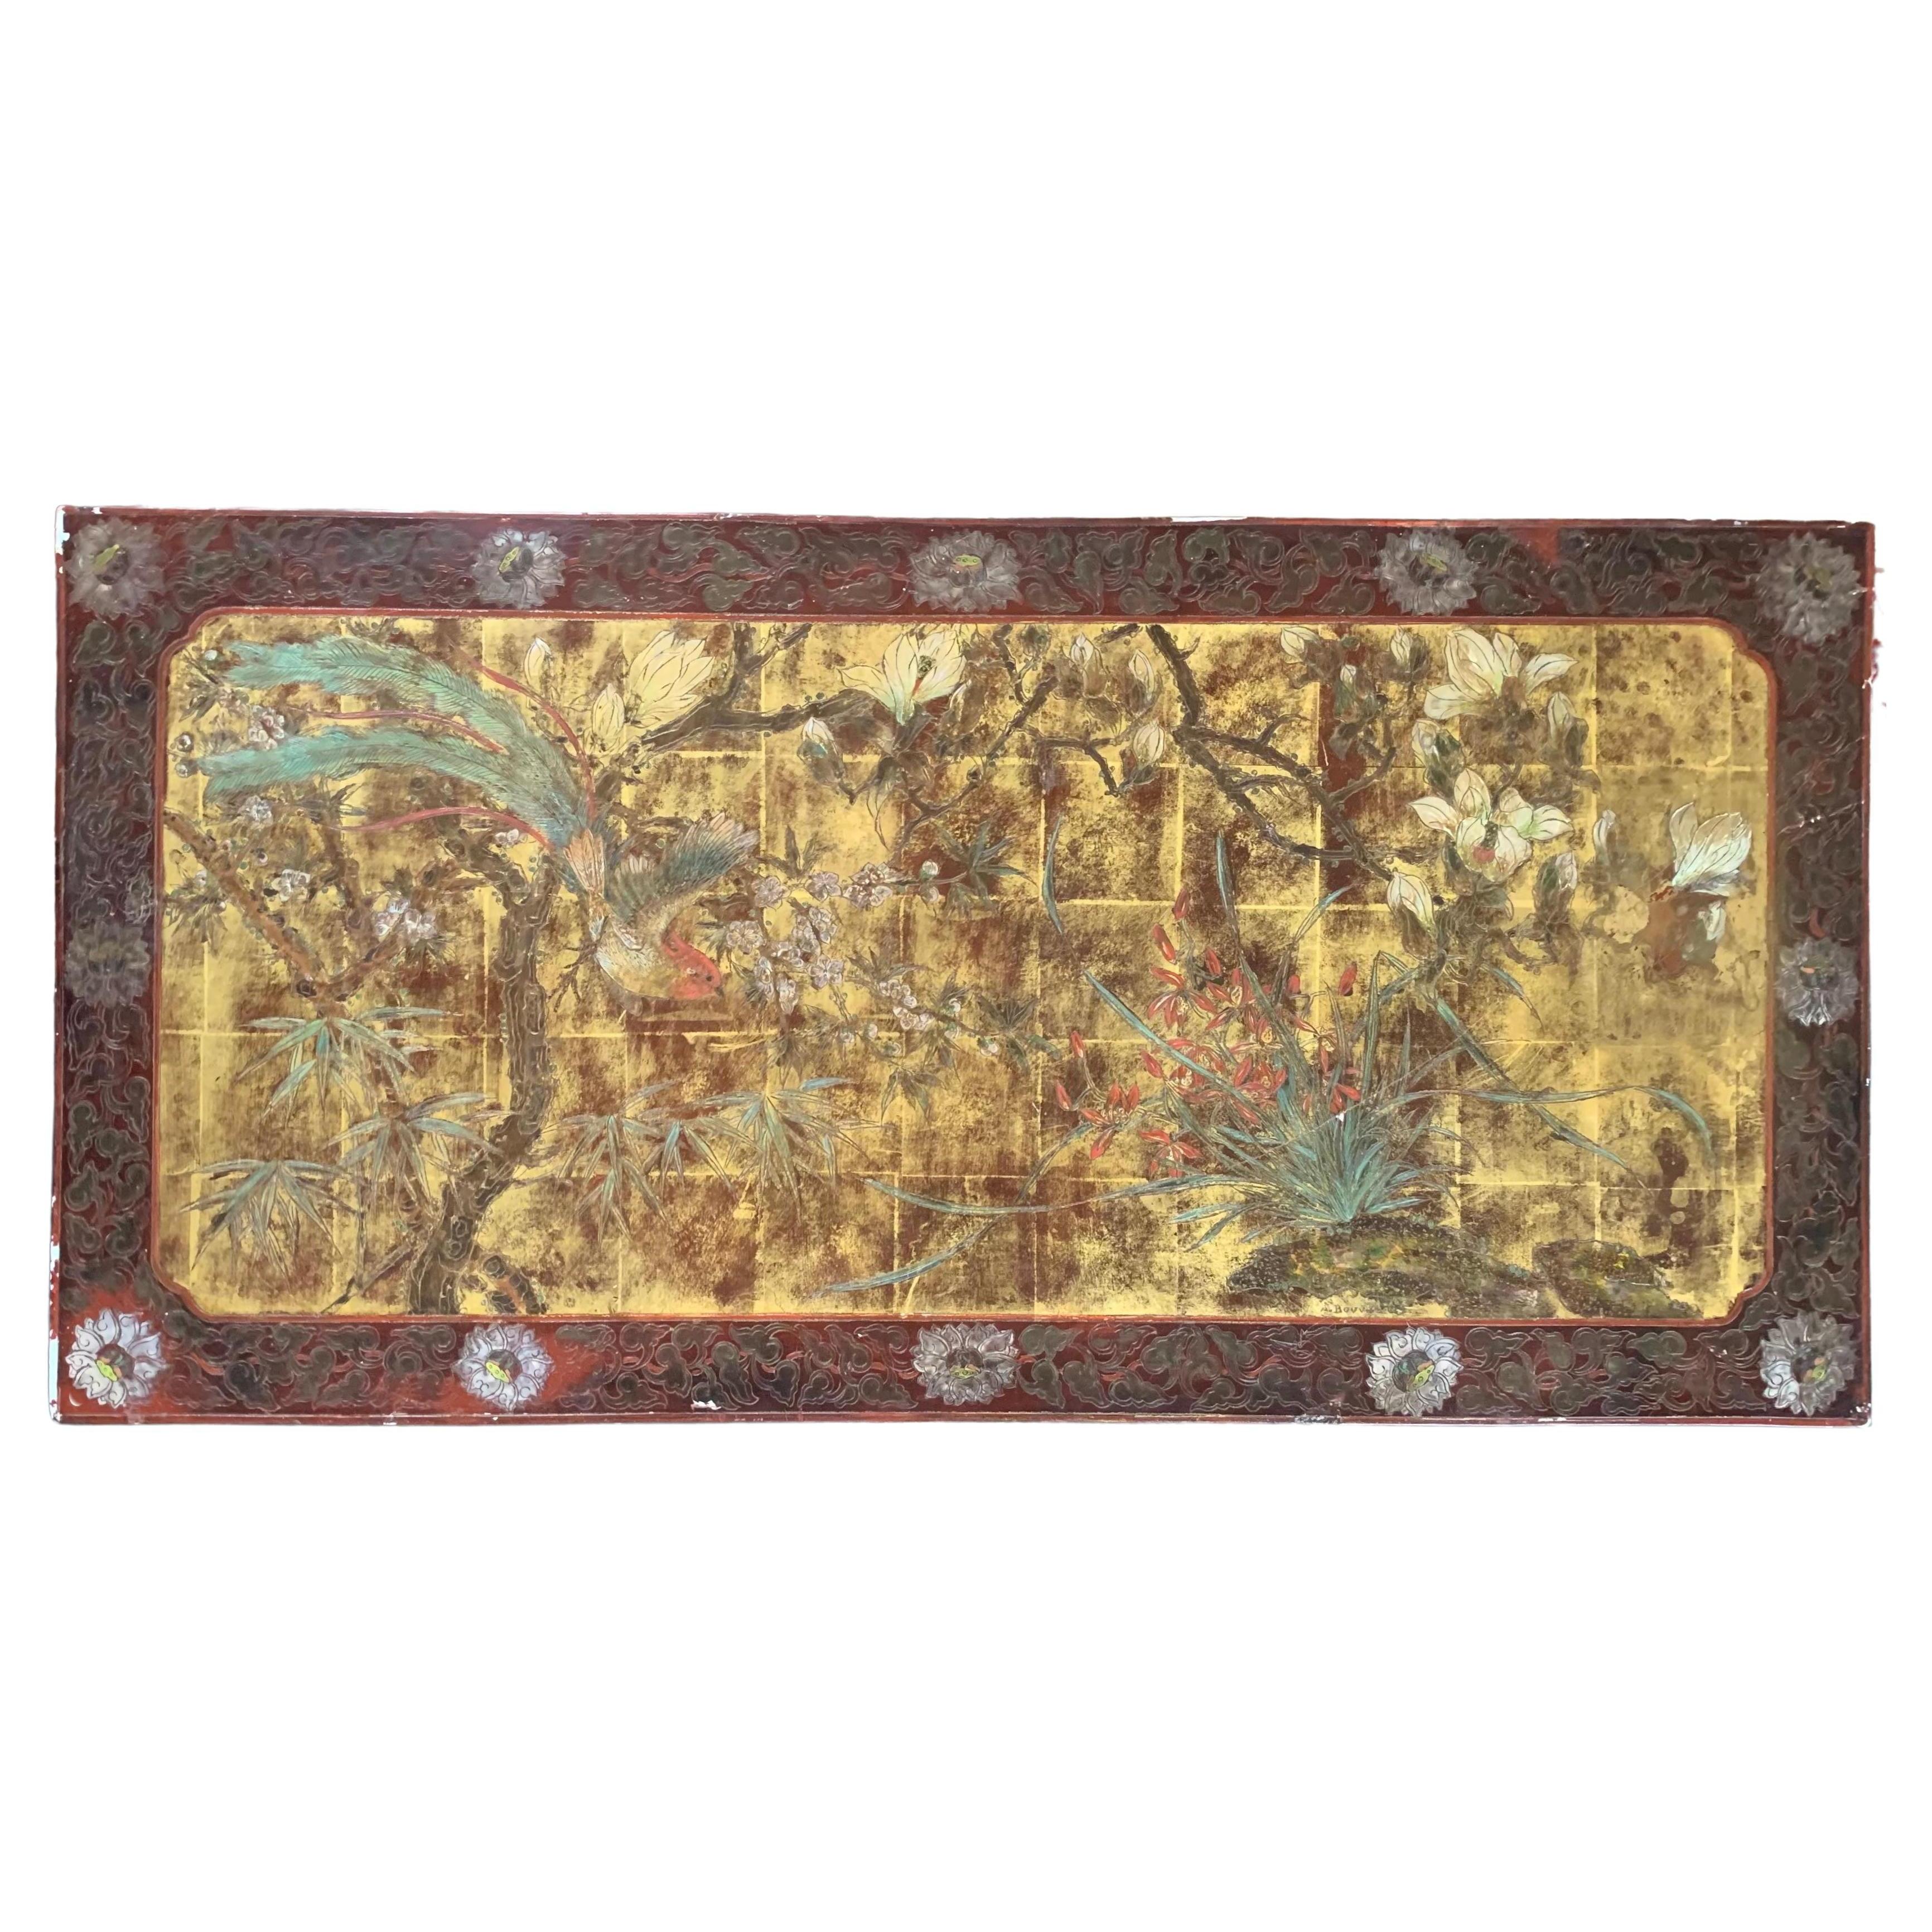 Panneau laqué d'inspiration chinoise peint à la main A.Bouverat 20ème siècle